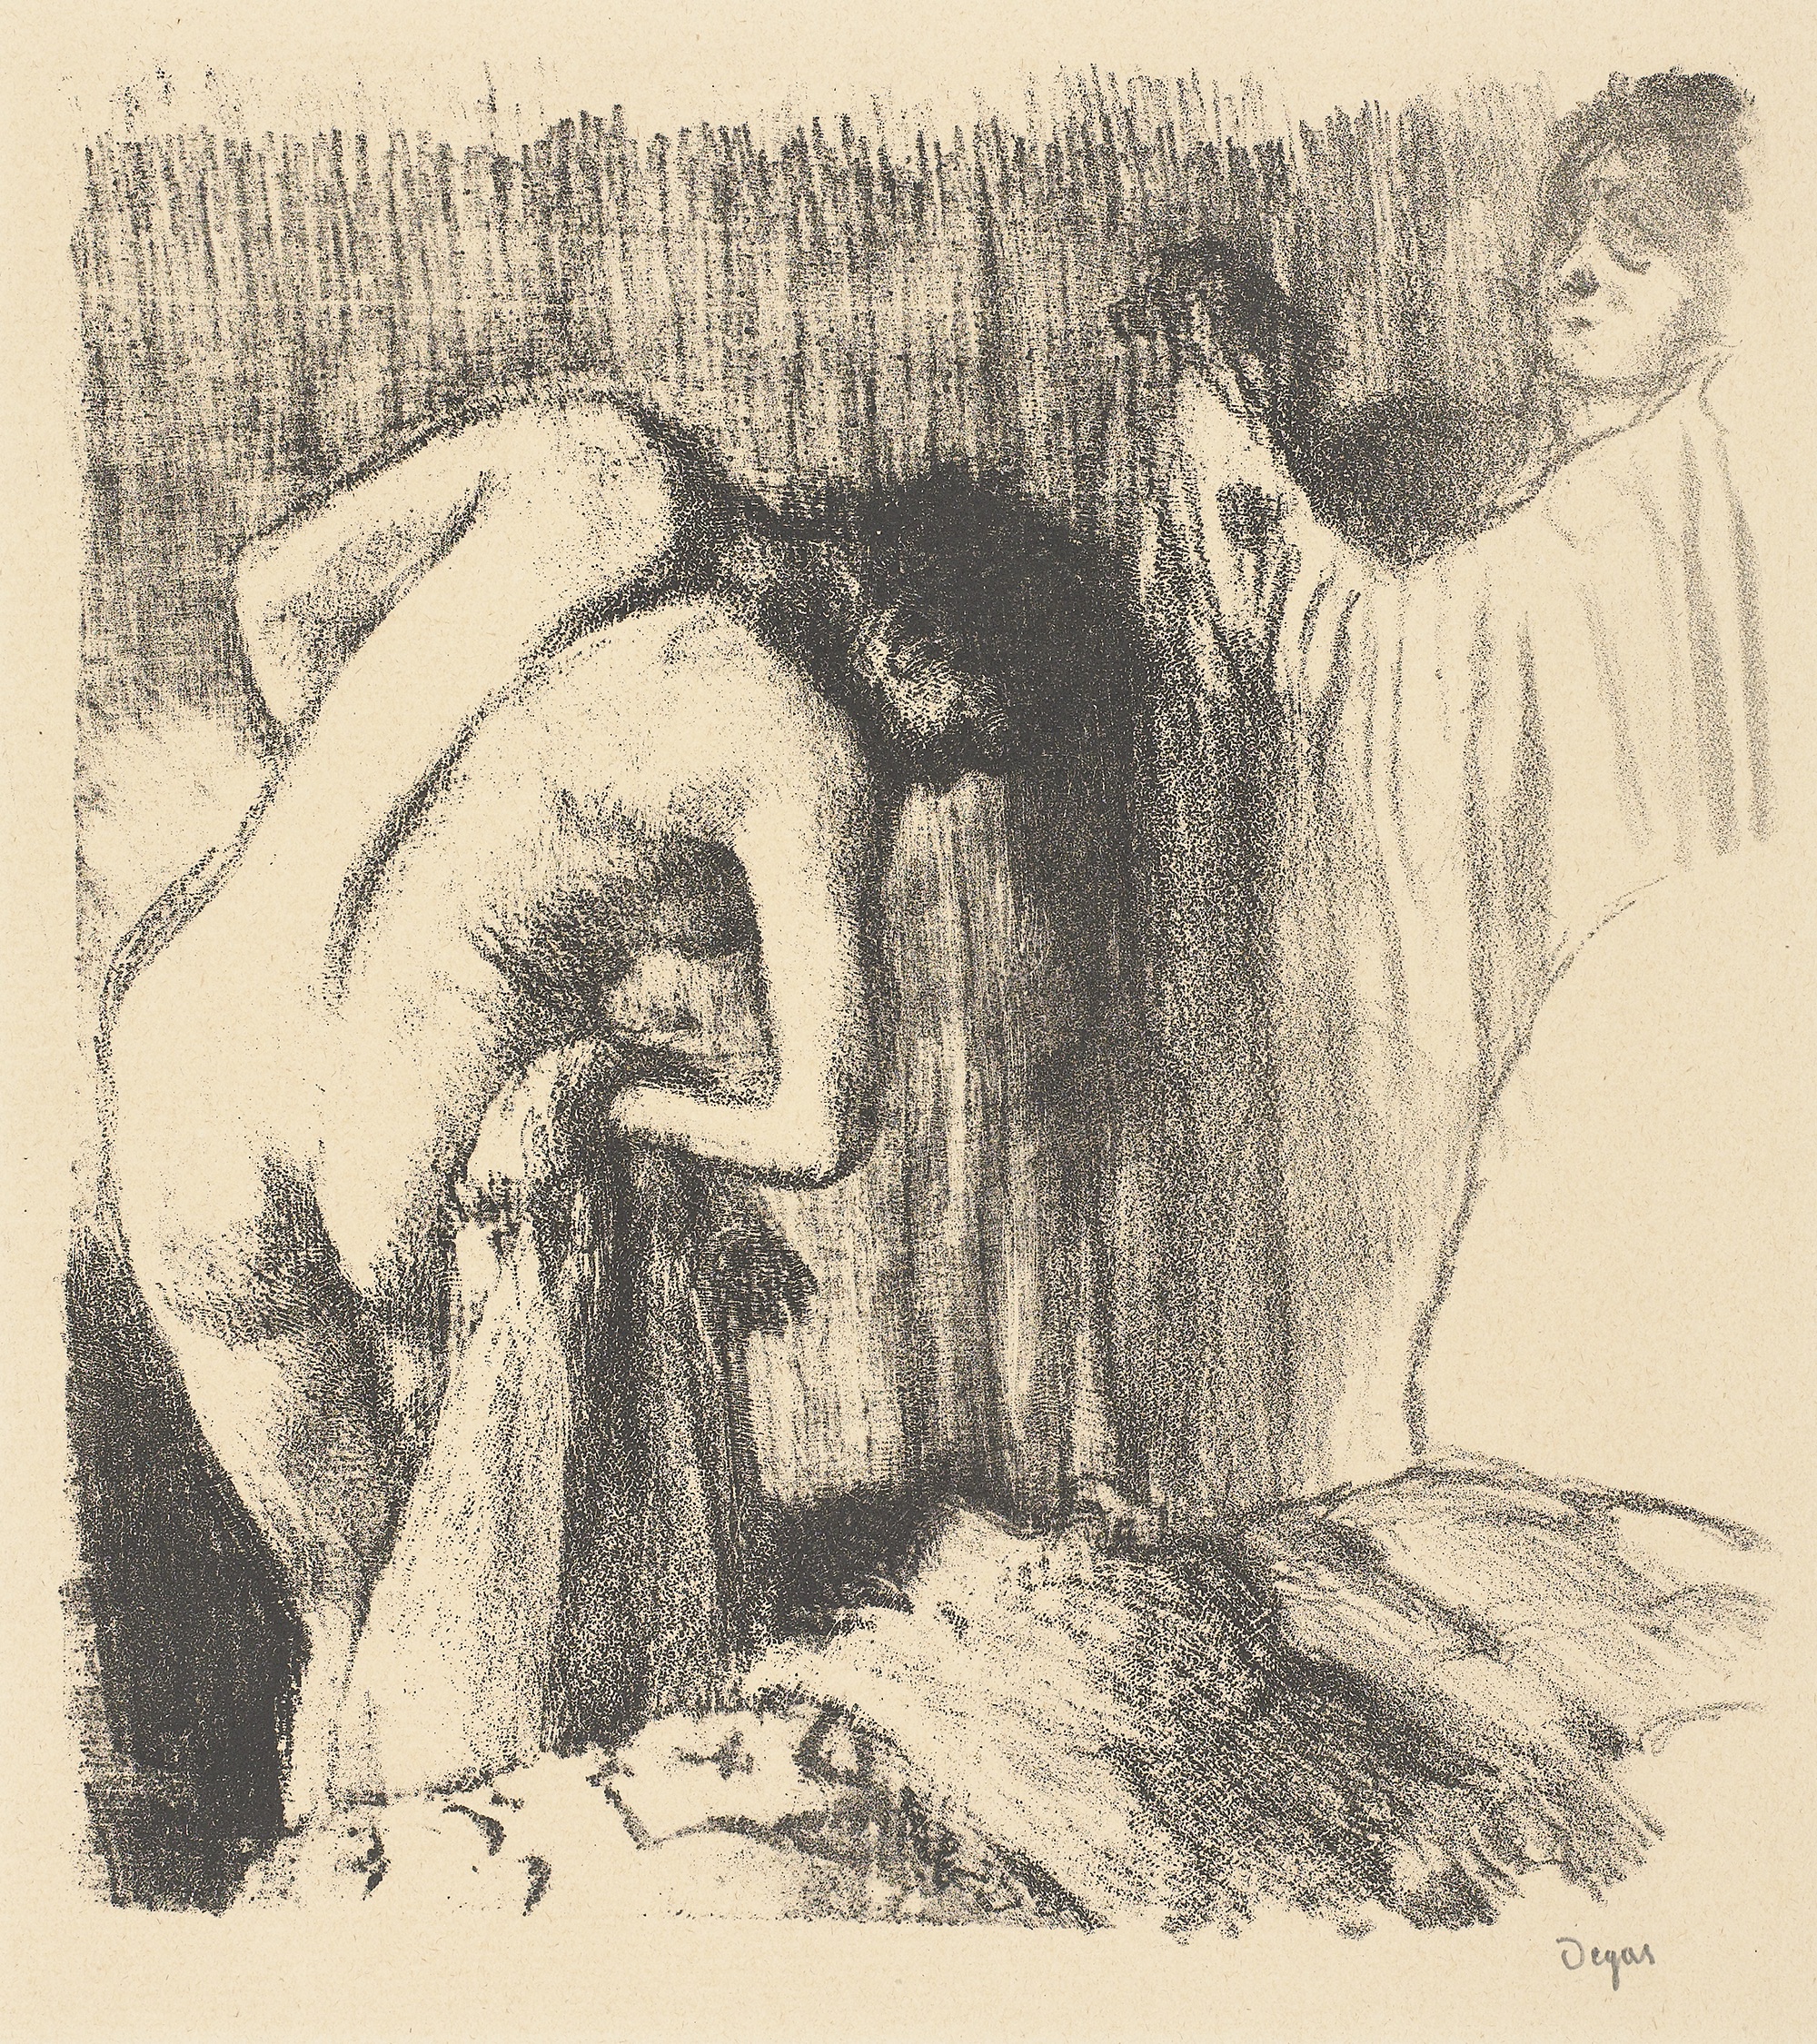 Mulher se secando depois do banho by Edgar Degas - 1891-1892 Rembrandthuis